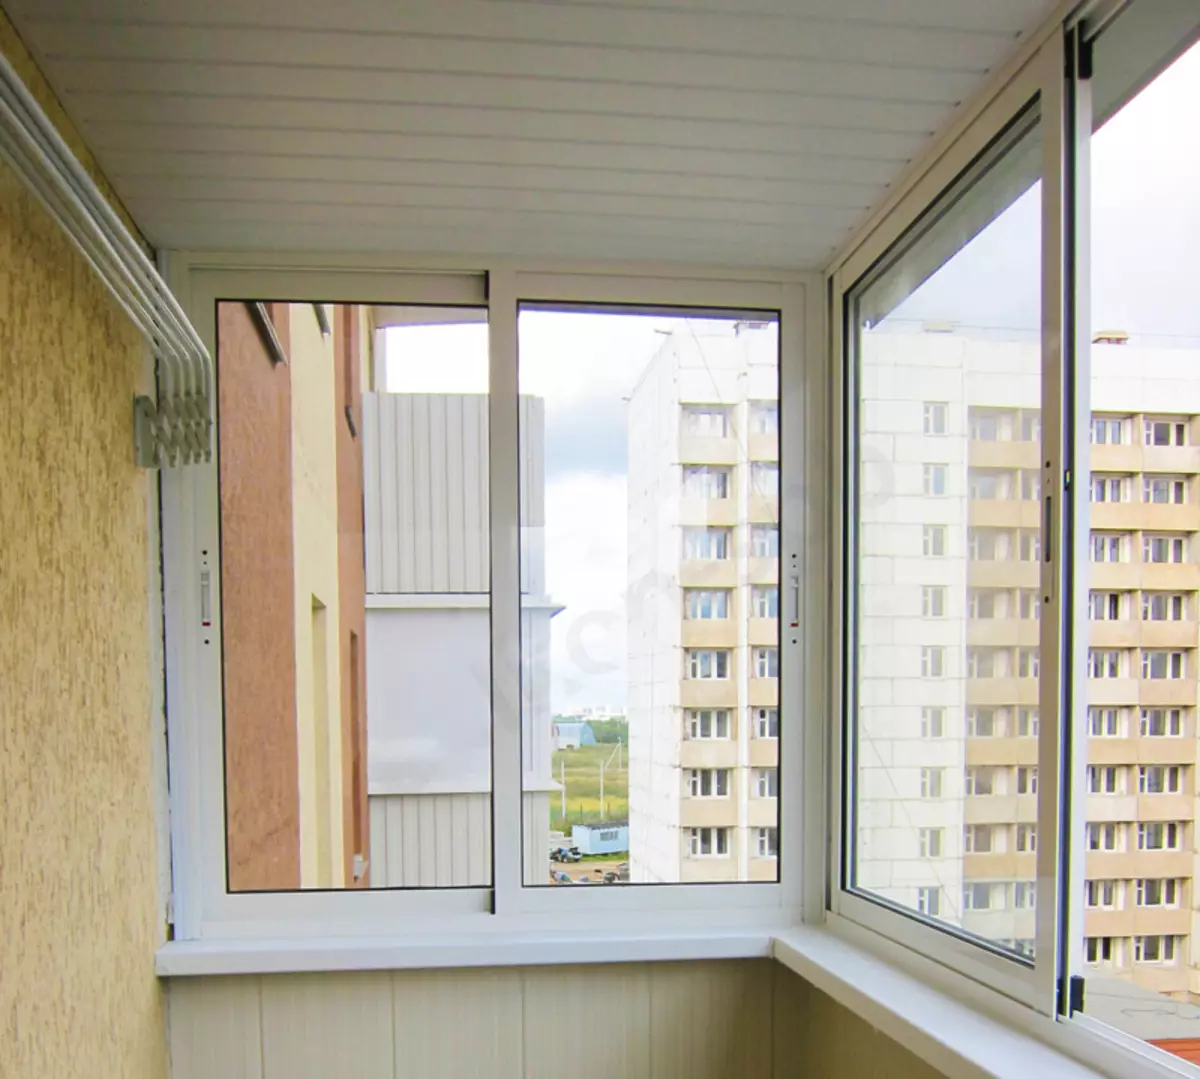 Calent i balcó semi-temperatura: què és i quina és la diferència amb vidre fred? Com reemplaçar façana vidre per a l'escalfament? 20843_13